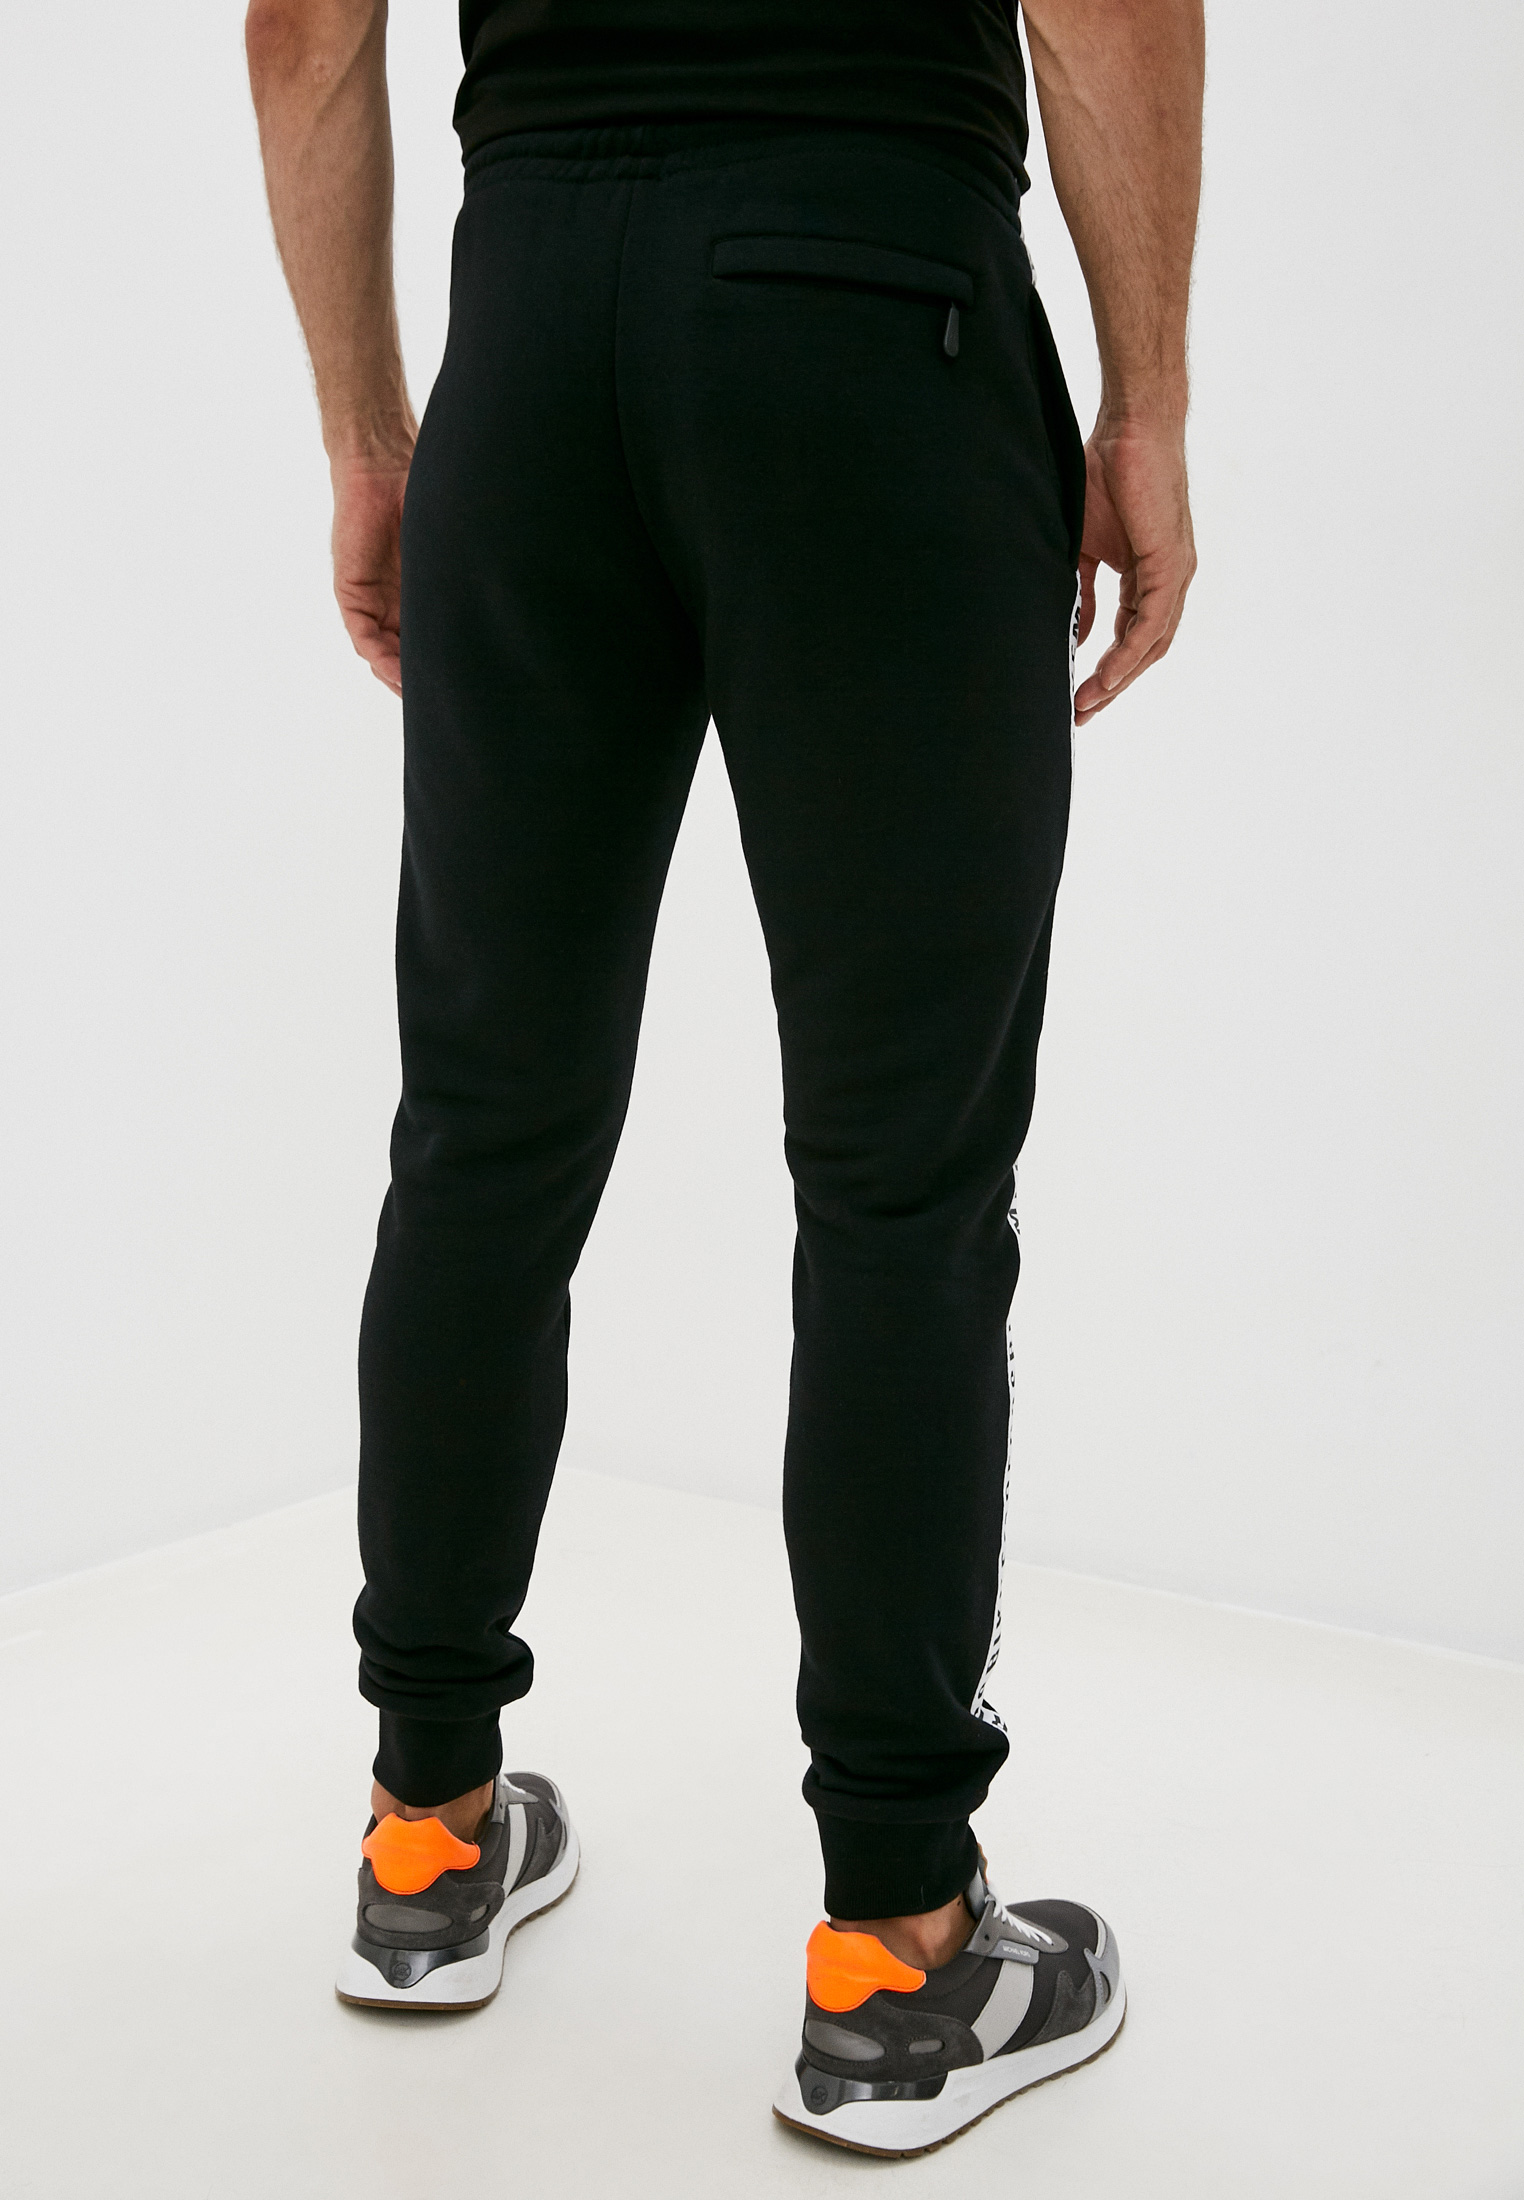 Мужские спортивные брюки Bikkembergs (Биккембергс) C 1 158 80 M 4235: изображение 4